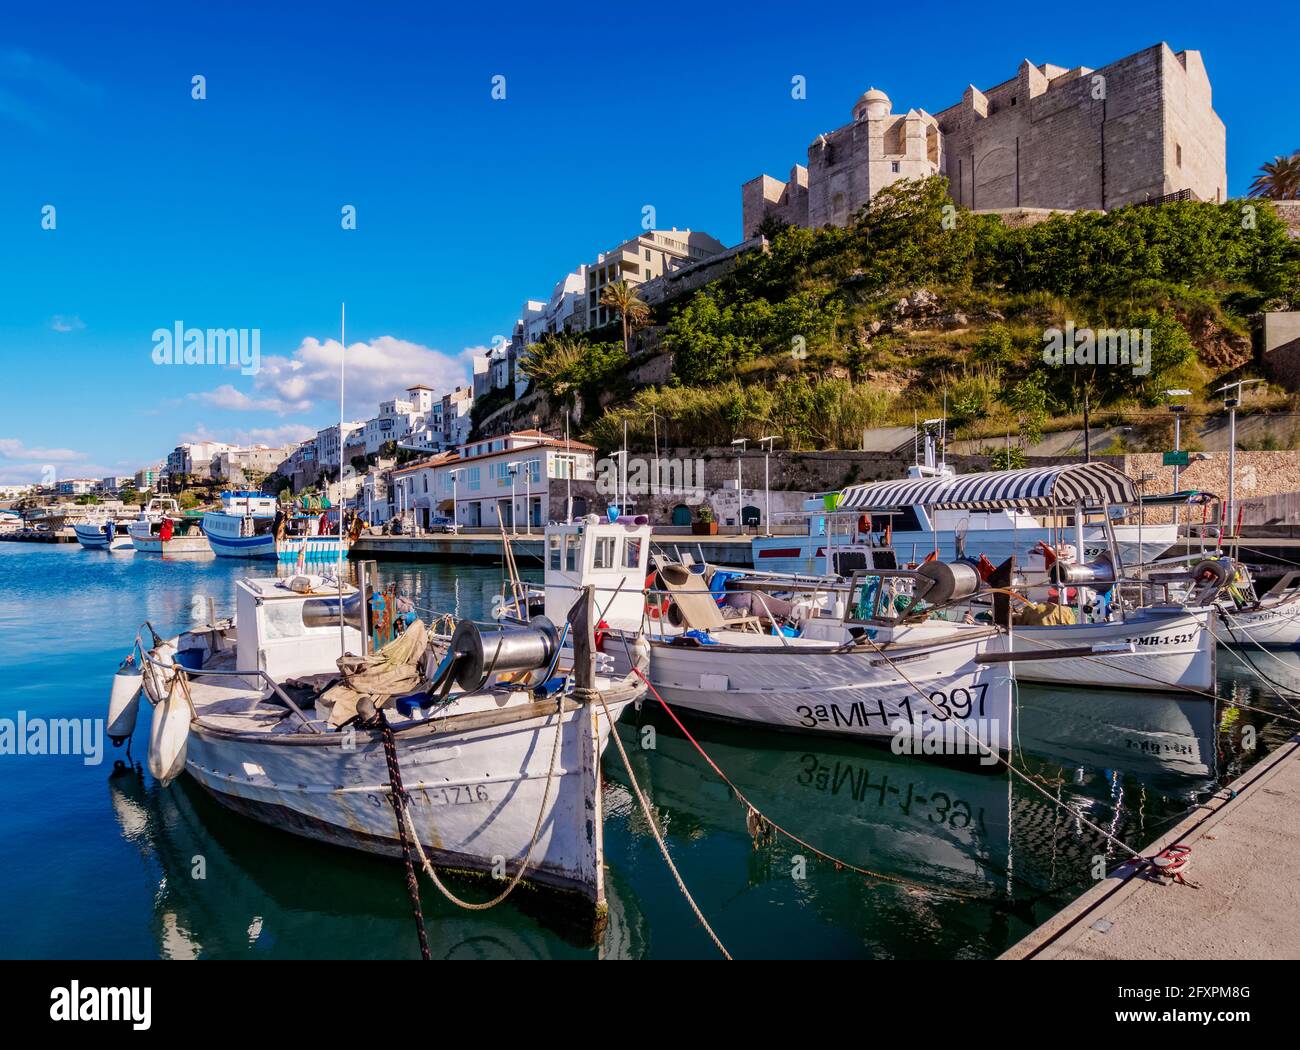 Barche nel porto e monastero di San Francesco, Mahon (Mao), Minorca (Minorca), Isole Baleari, Spagna, Mediterraneo, Europa Foto Stock